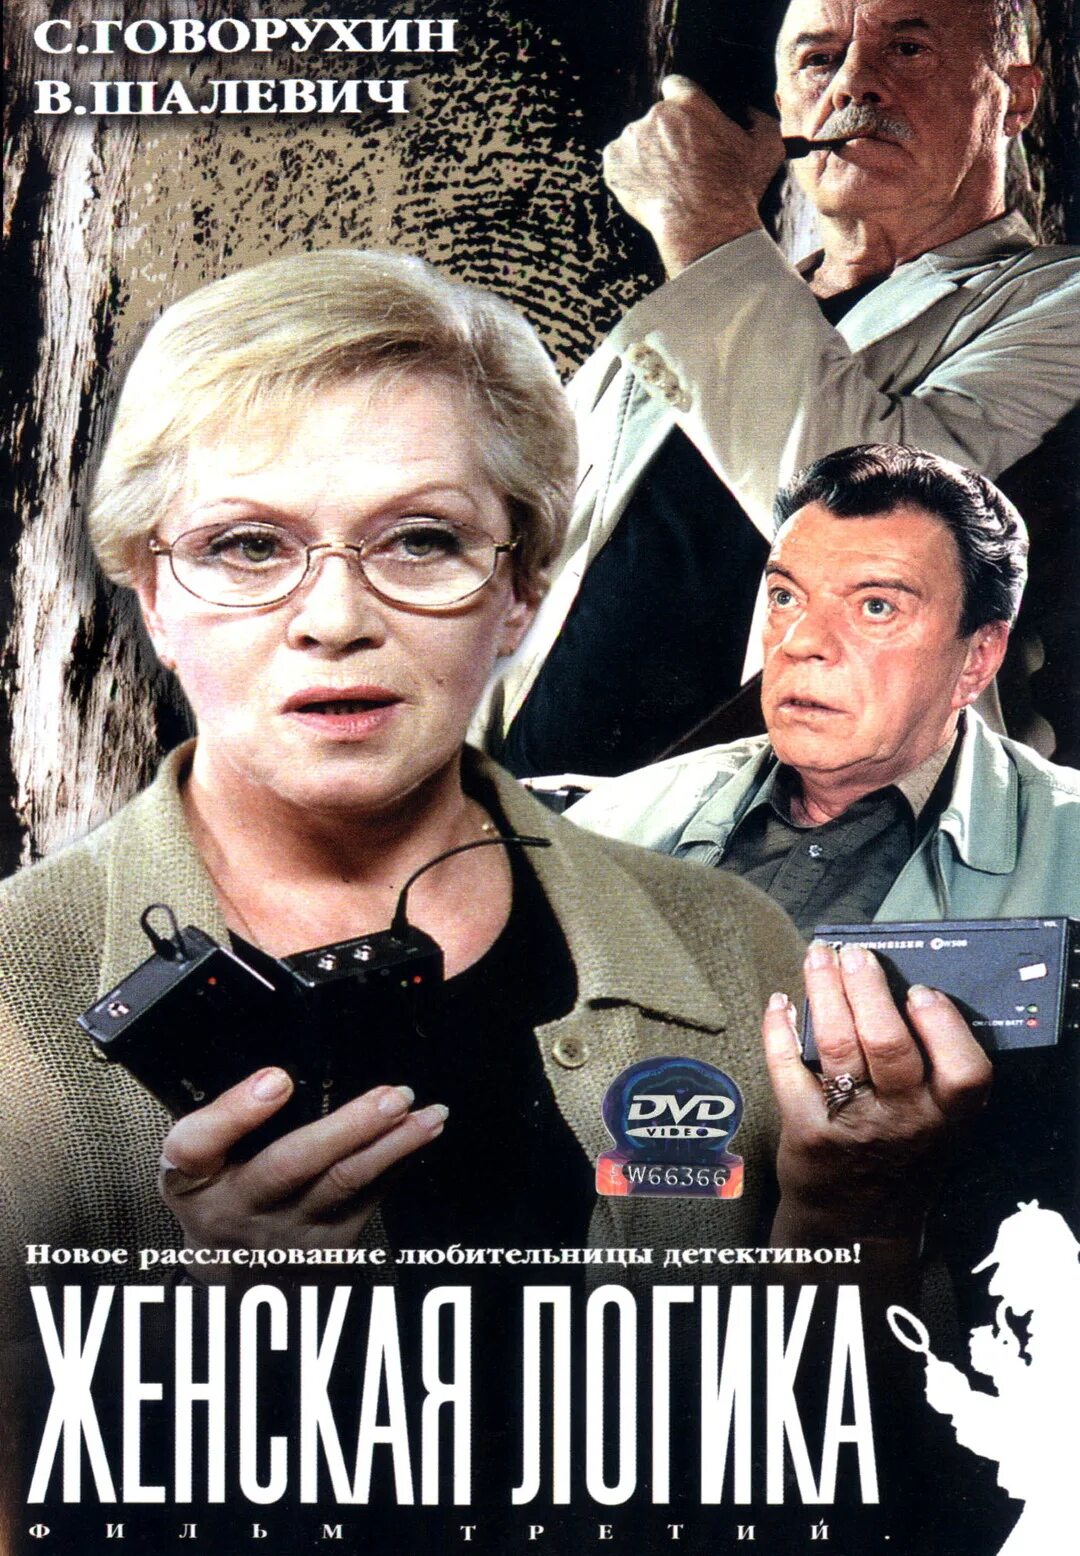 Российские детективные расследования. Алиса Фрейндлих 2002.